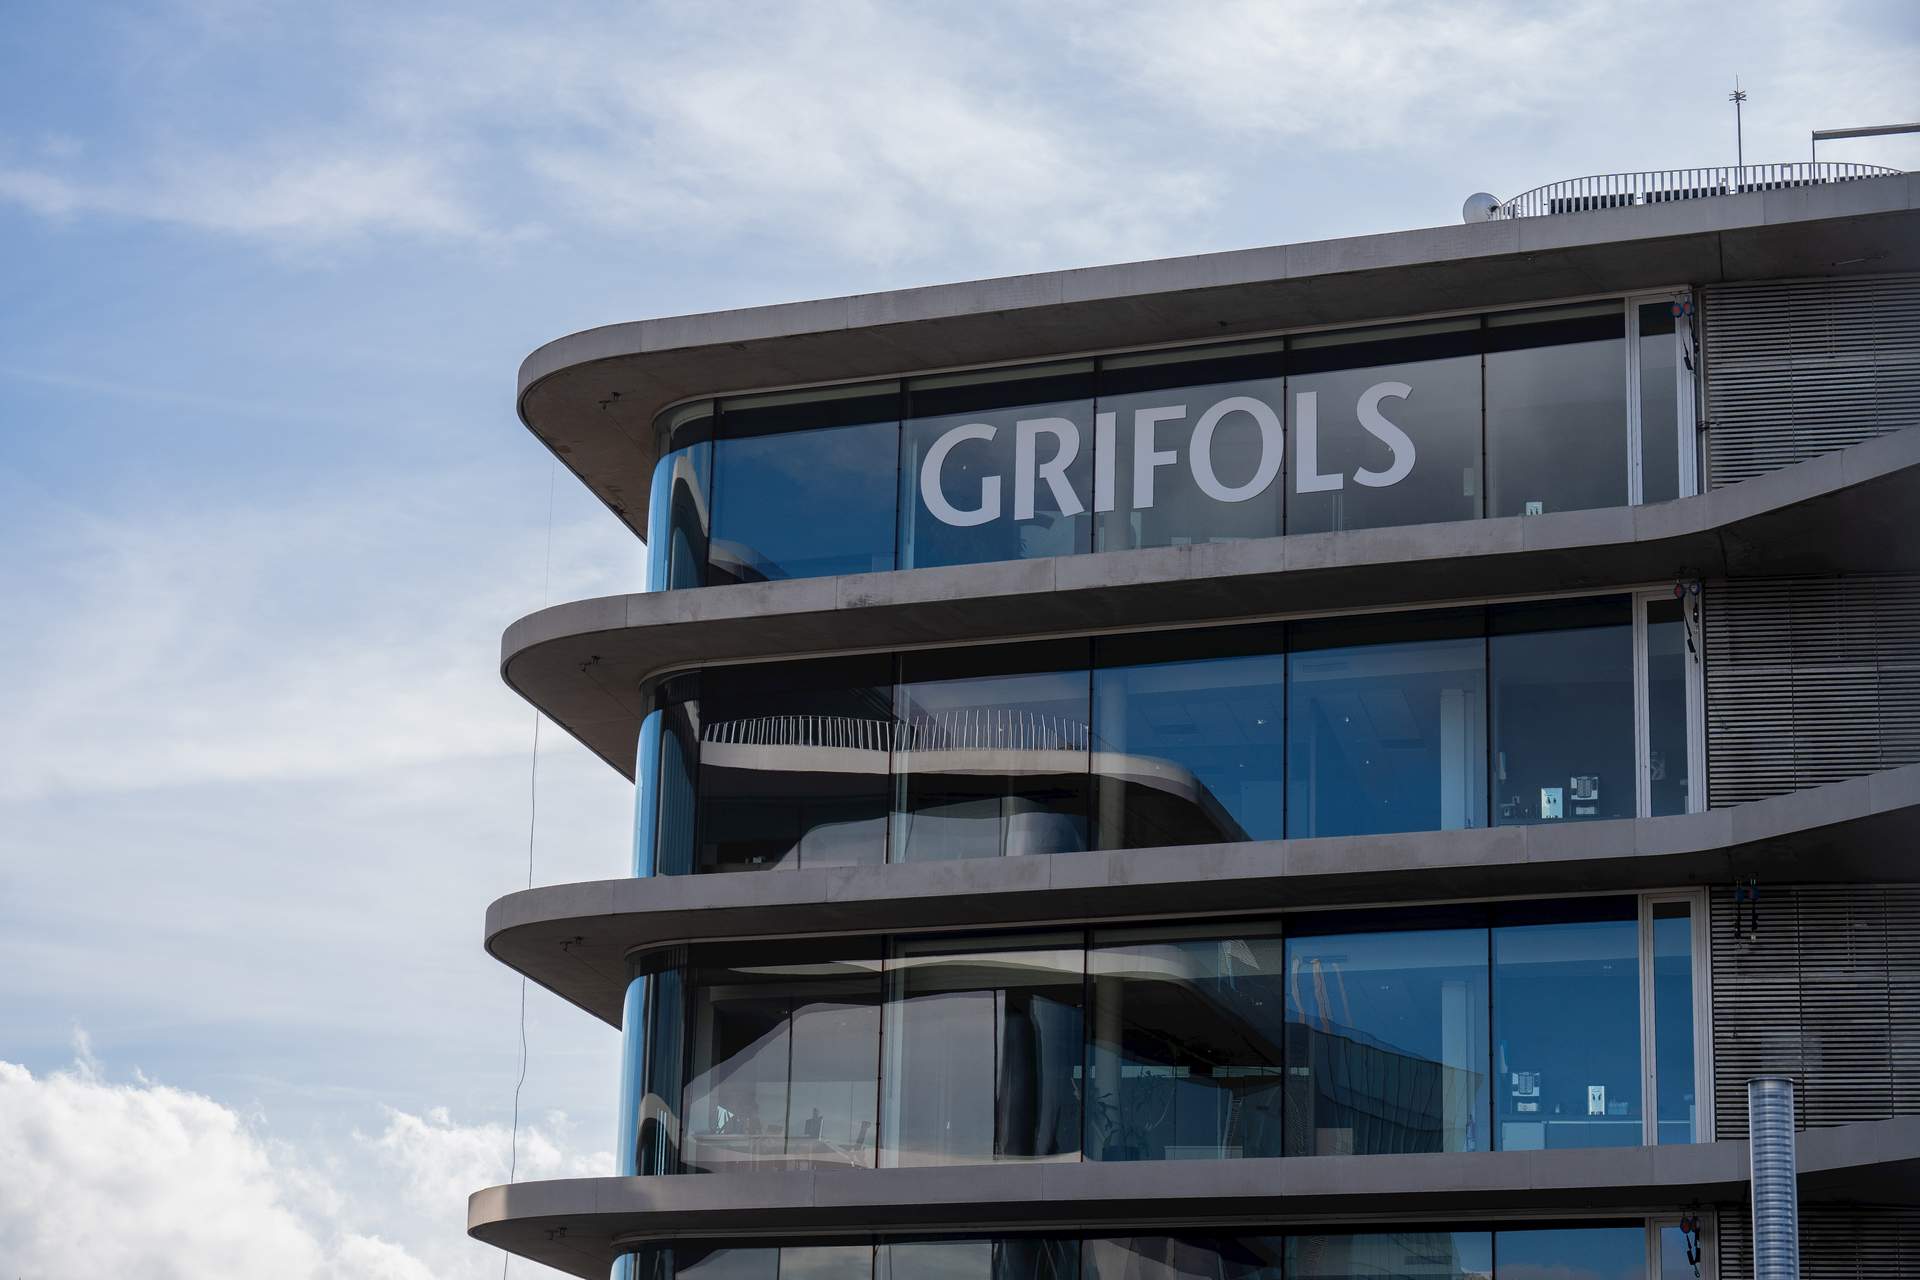 Grifols se dispara más de un 10%, con sus acciones a 9 euros y los bajistas elevando posiciones